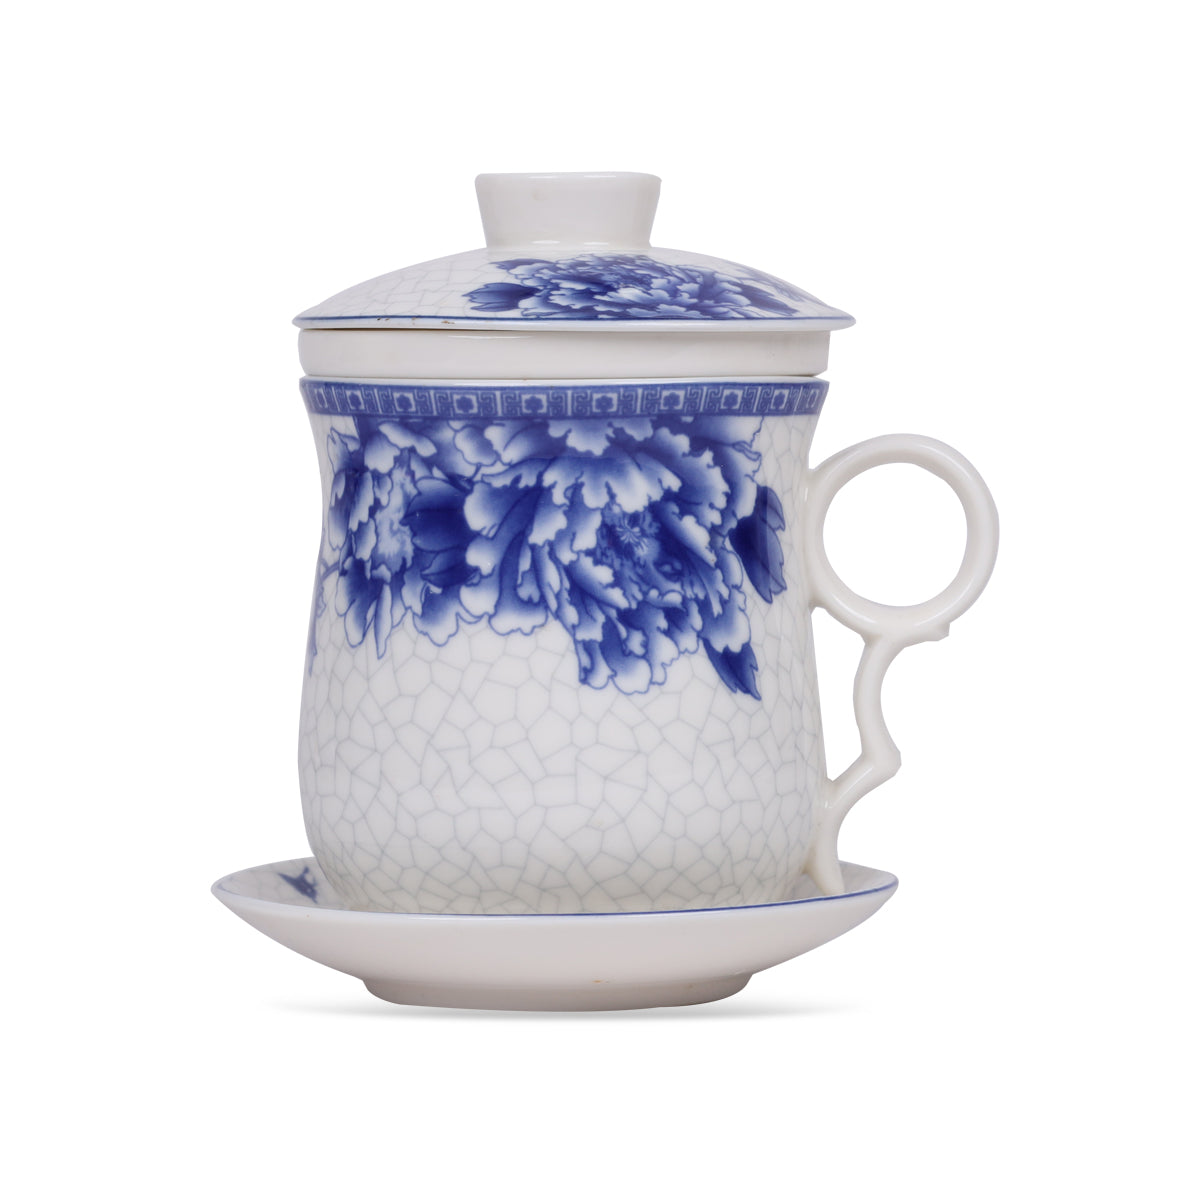 Buy tea mug with lid and saucer online